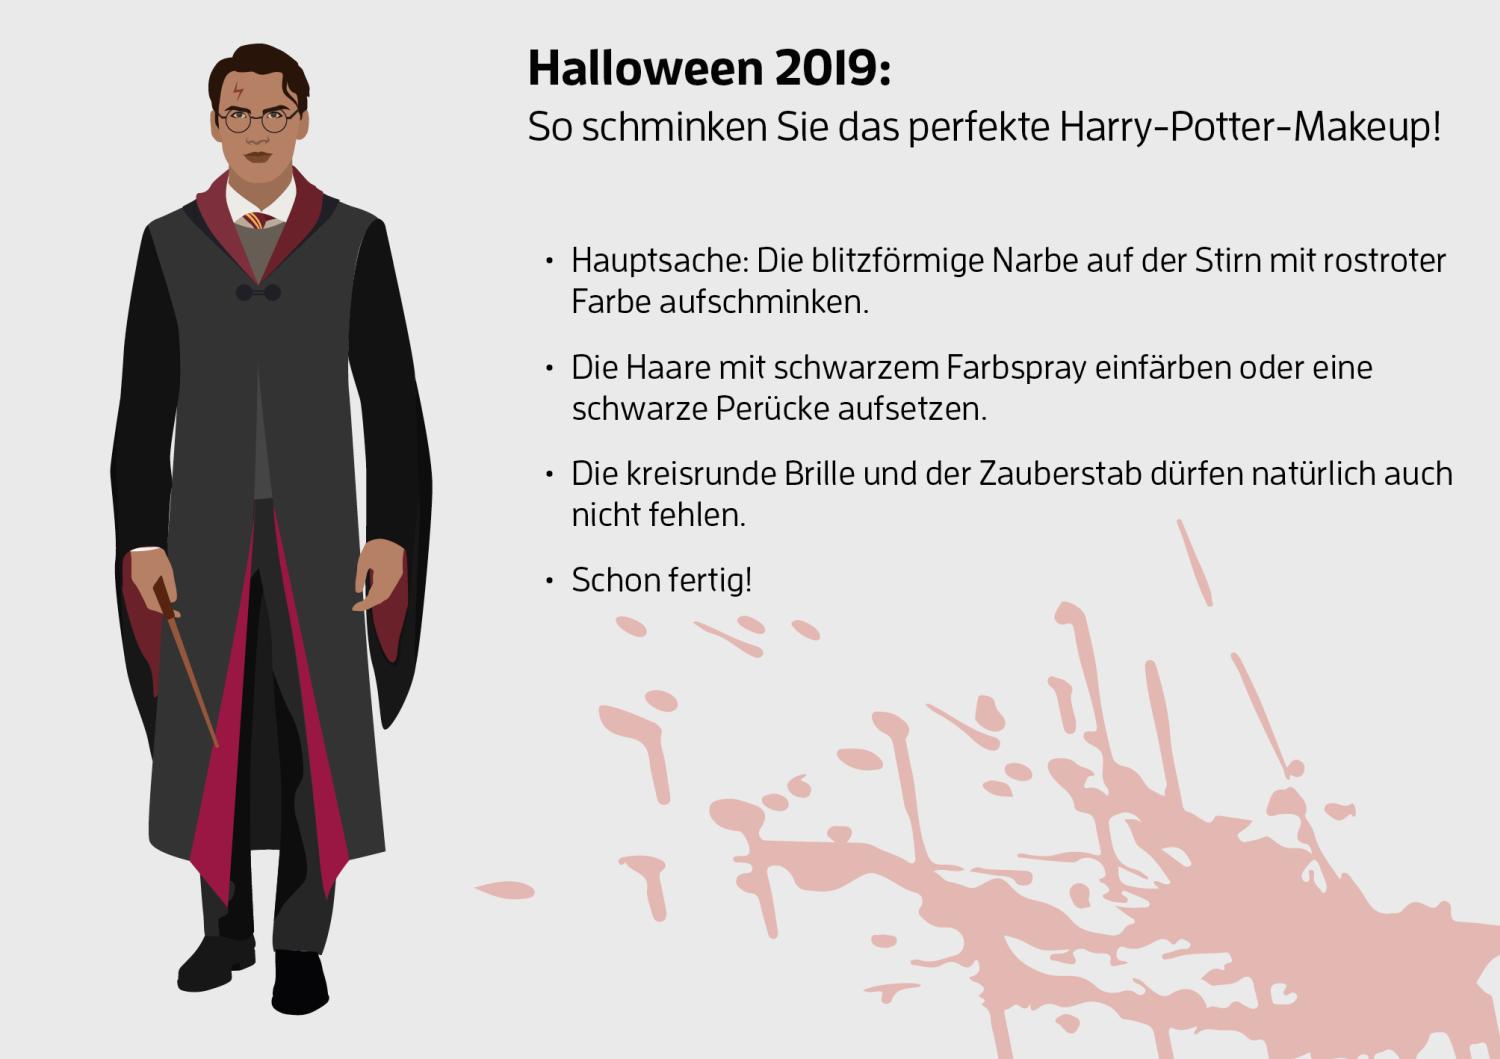 beliebteste-halloween-kostüme-platz-3-harry-potter-schminkanleitung